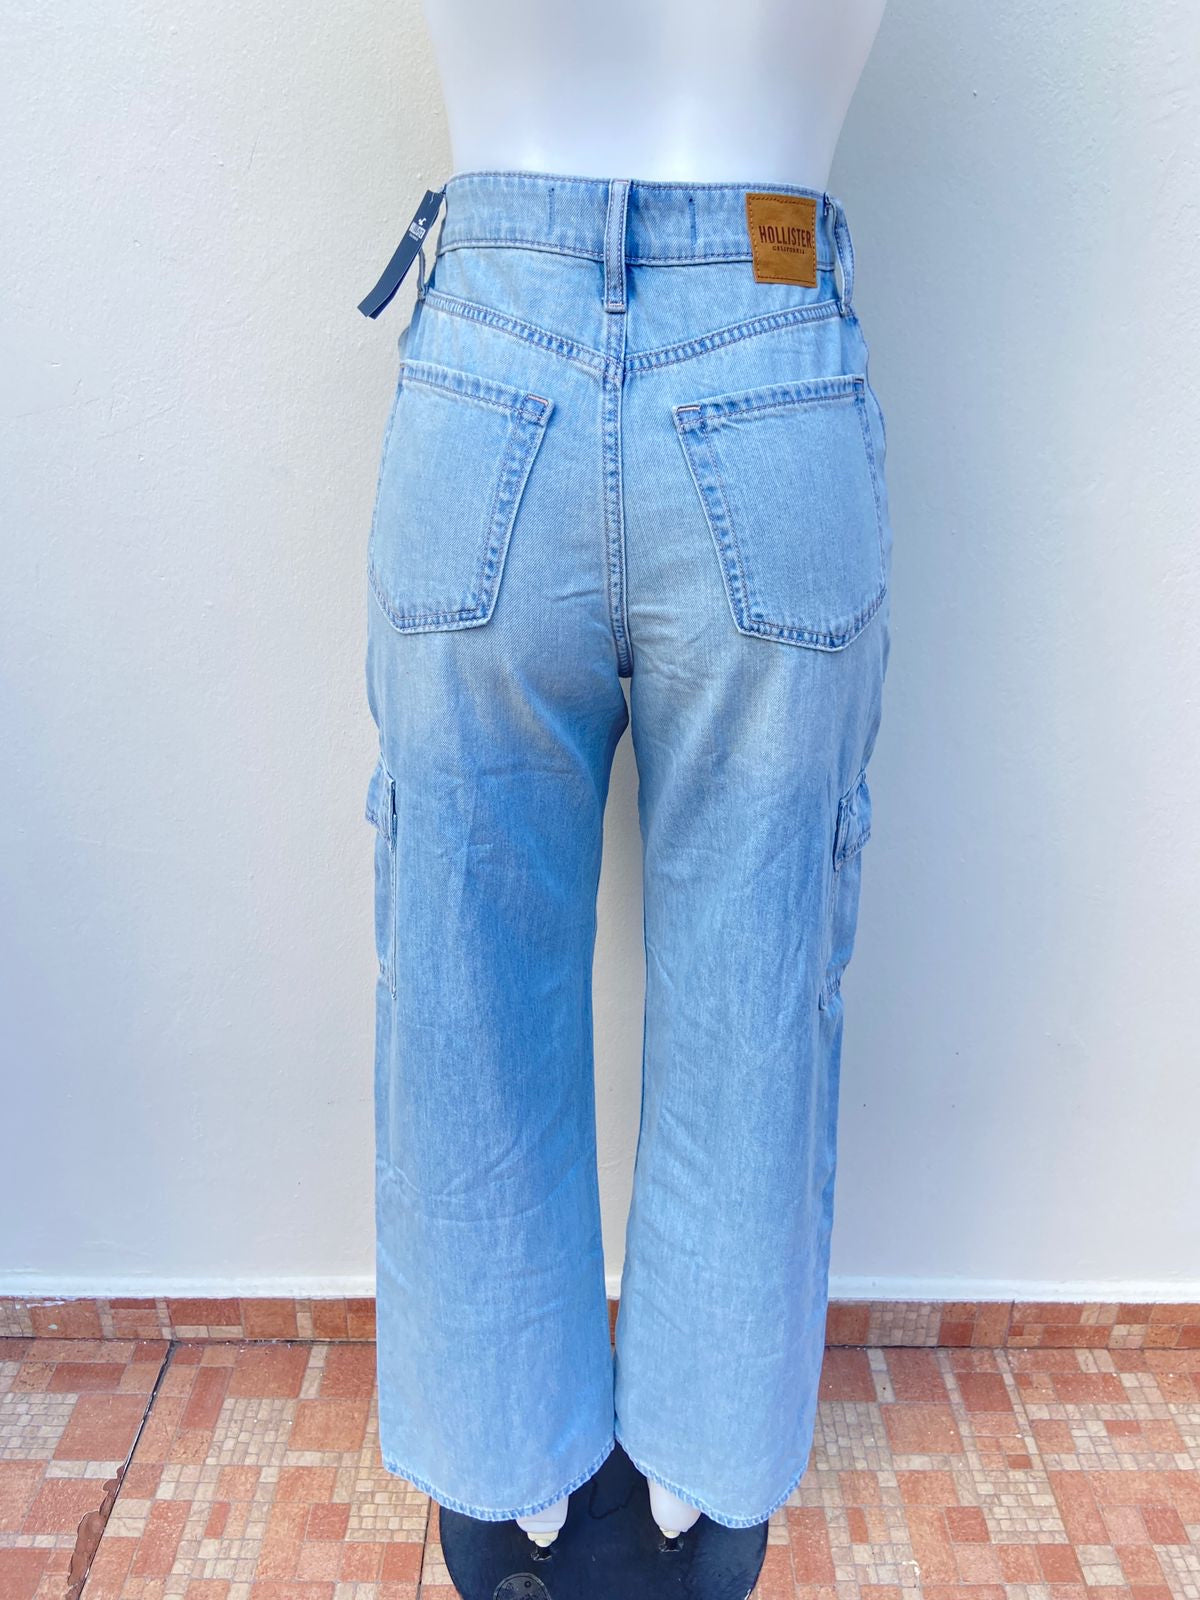 Pantalon jeans HOLLISTER original, HIGHEST- RISE VINTAGE BAGGY , azul claro con varios bolsillos en los lados.